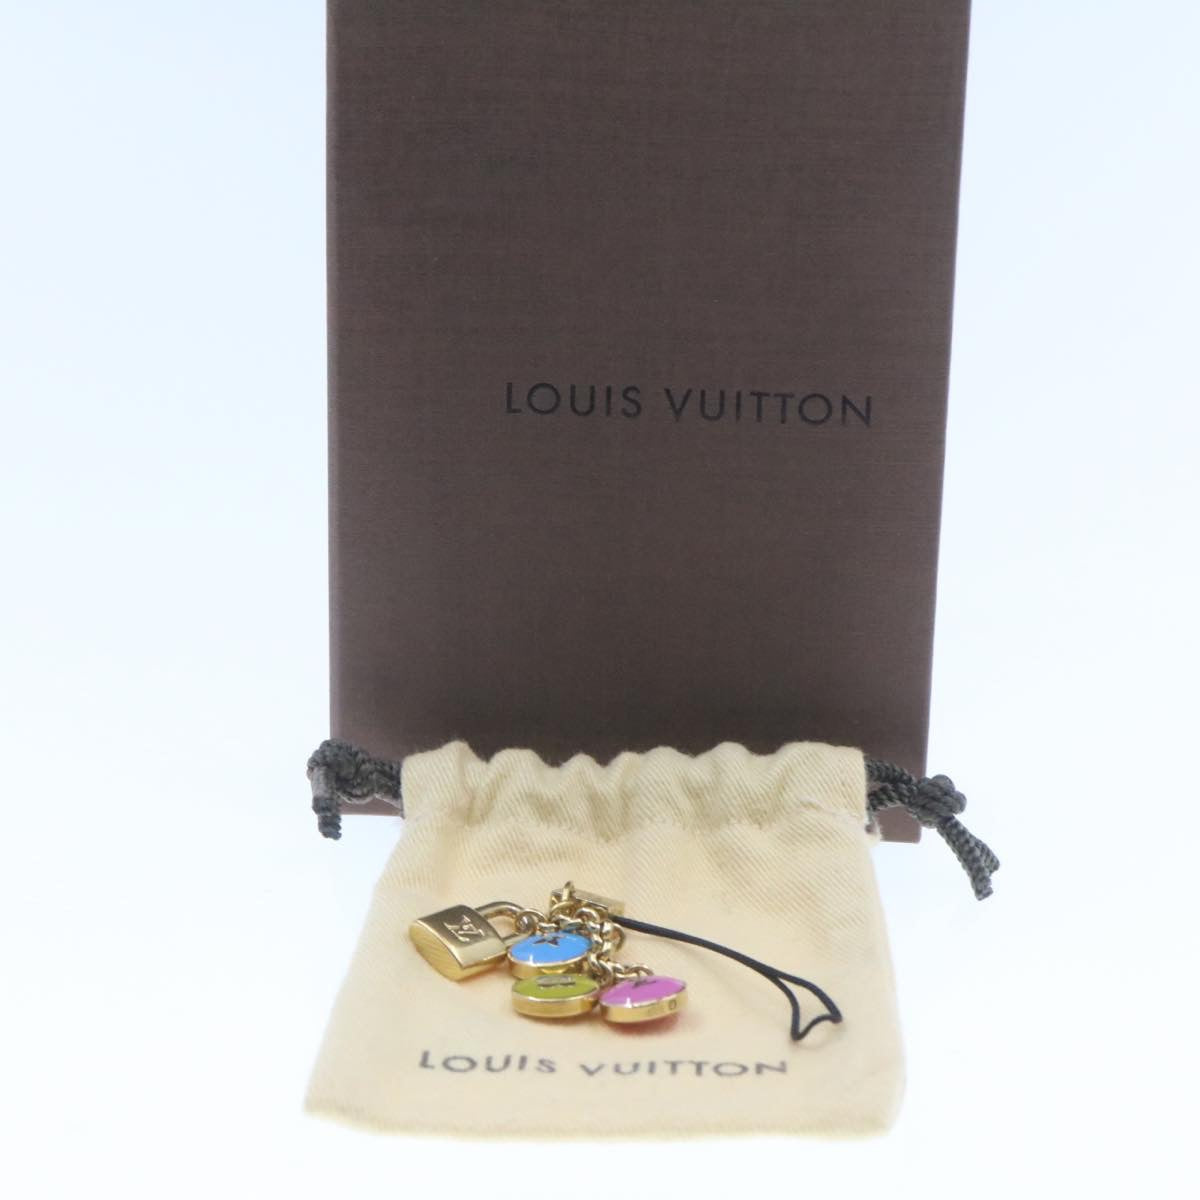 LOUIS VUITTON Pastille Bag Charm Gold Multicolor LV Auth am286b - 0